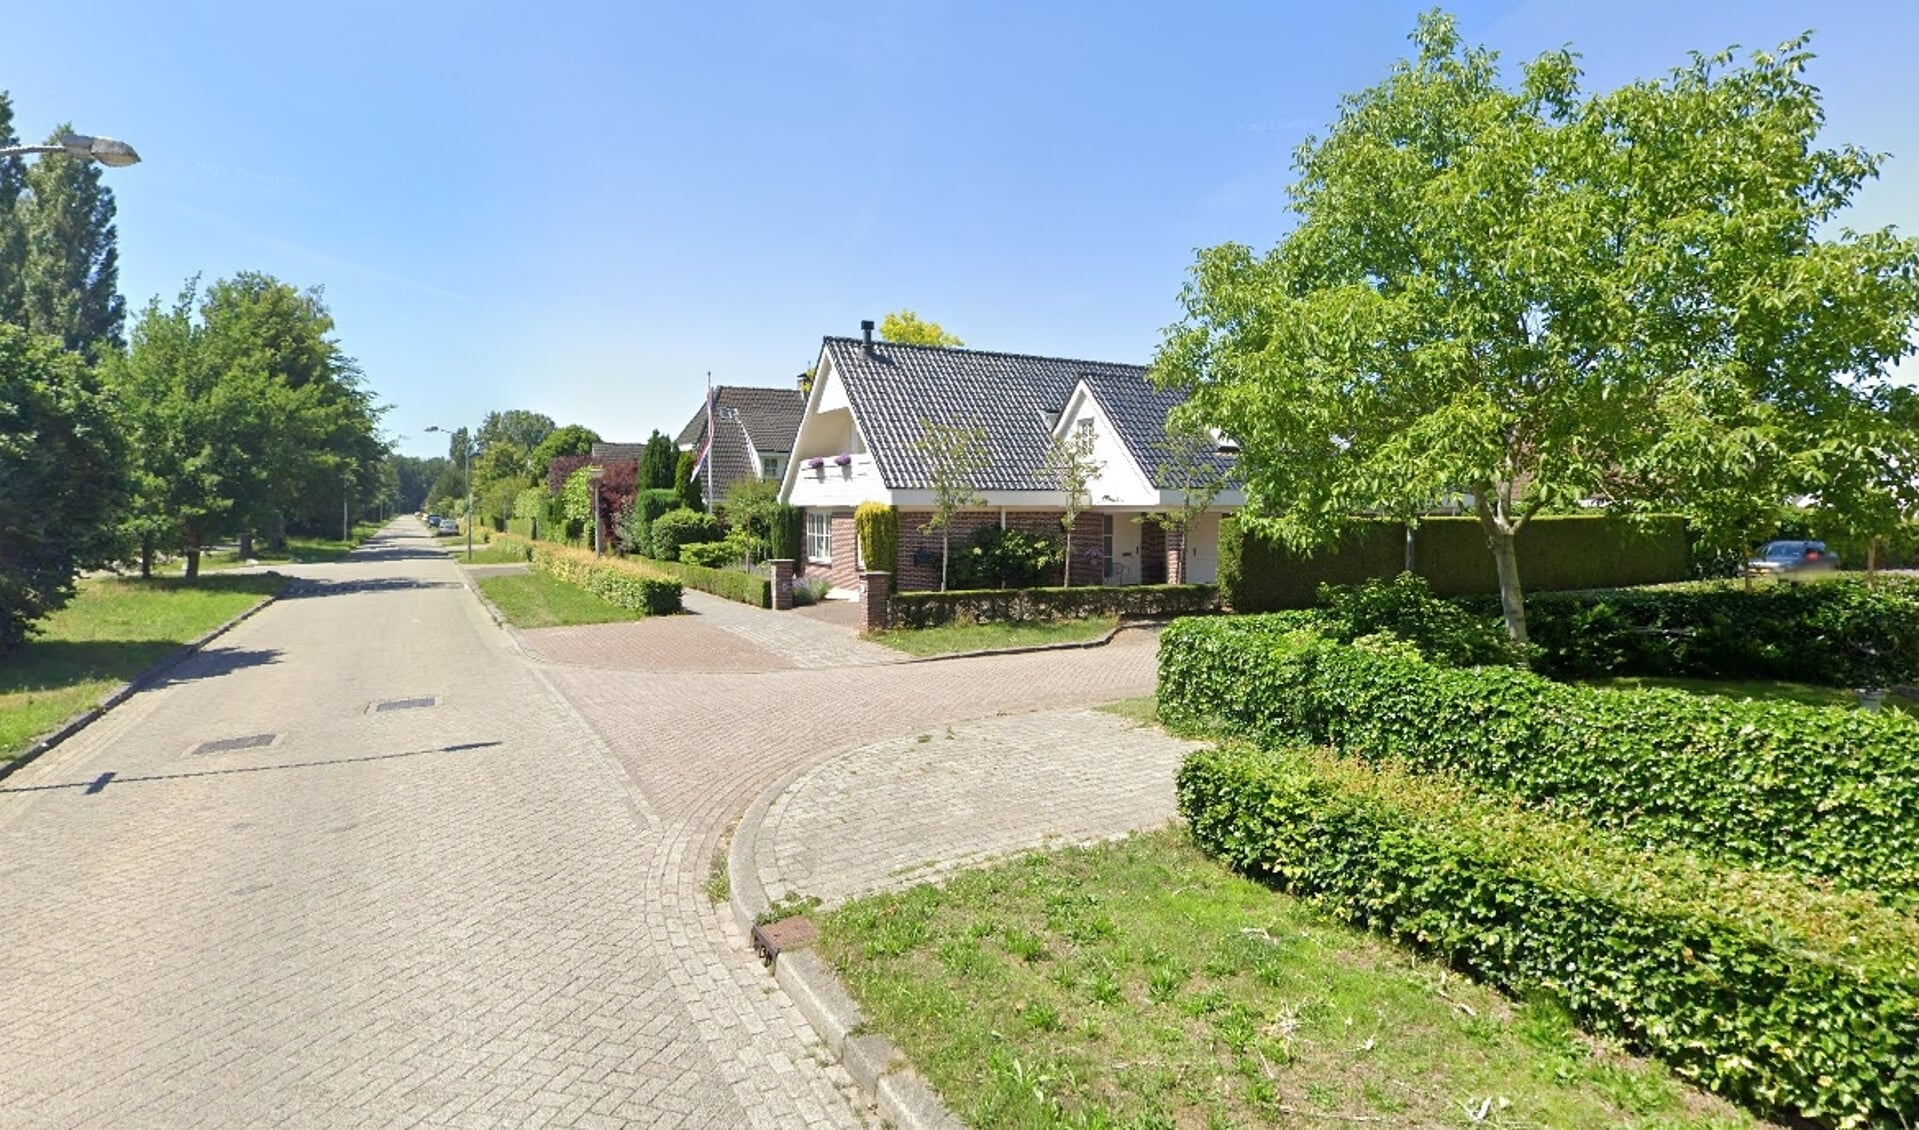 De Meerveldstraat in de Velden (Foto: Google Maps)